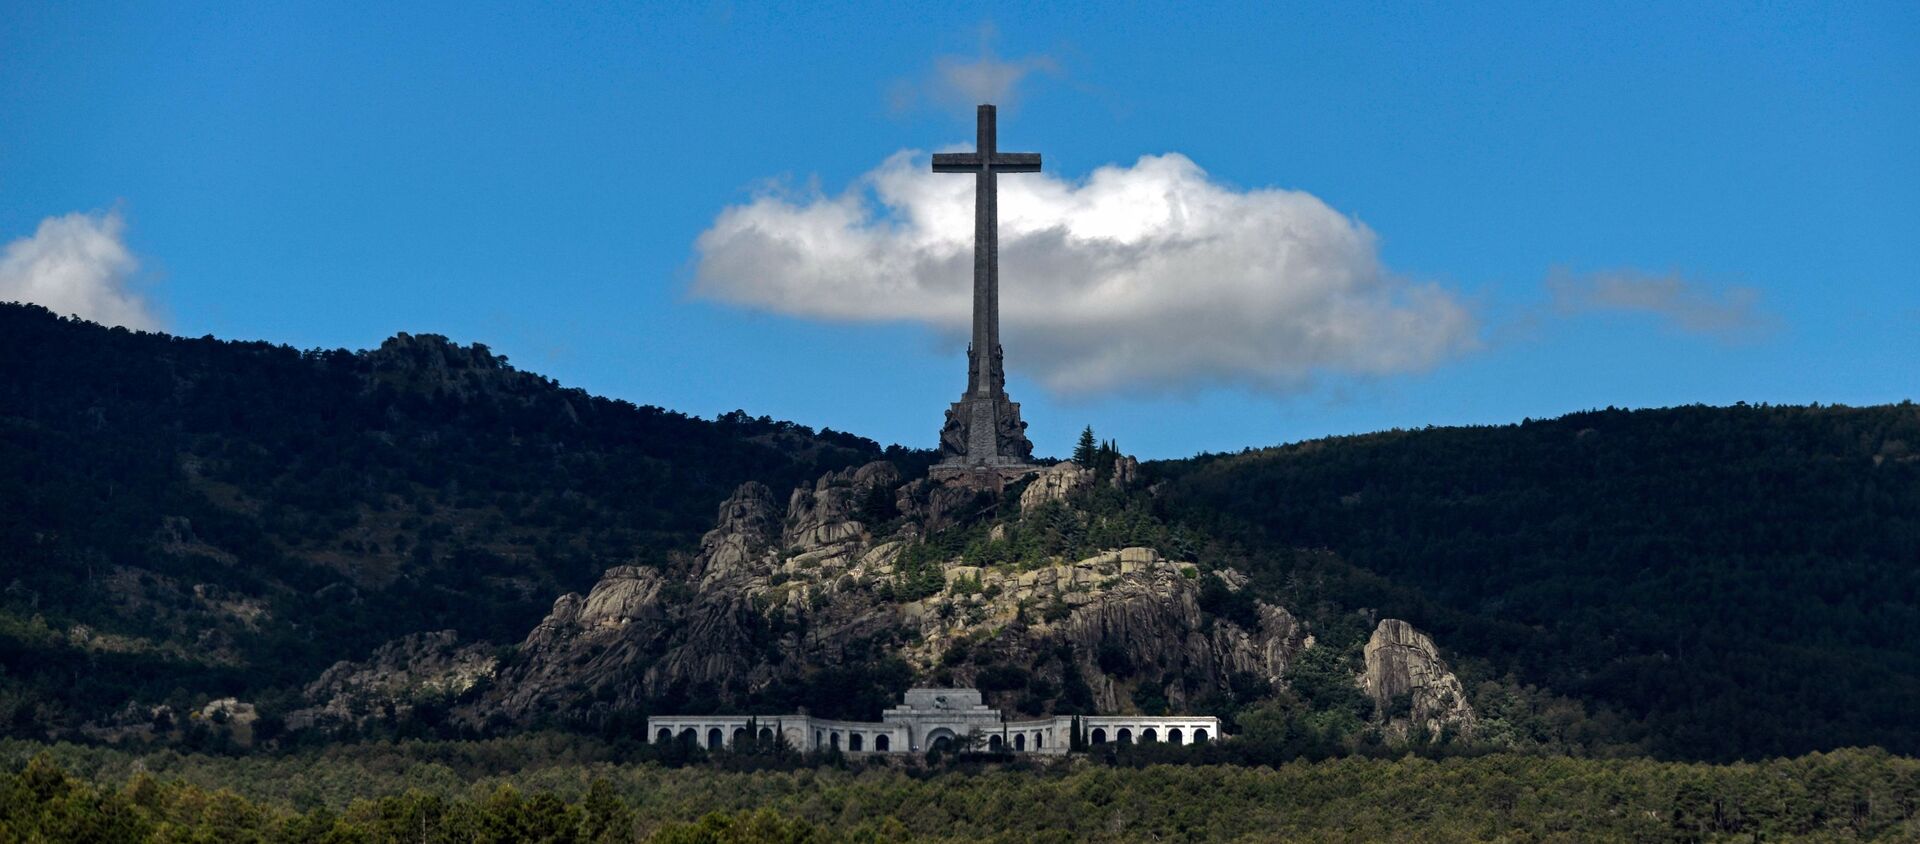 El Valle de los Caídos, España - Sputnik Mundo, 1920, 24.09.2019